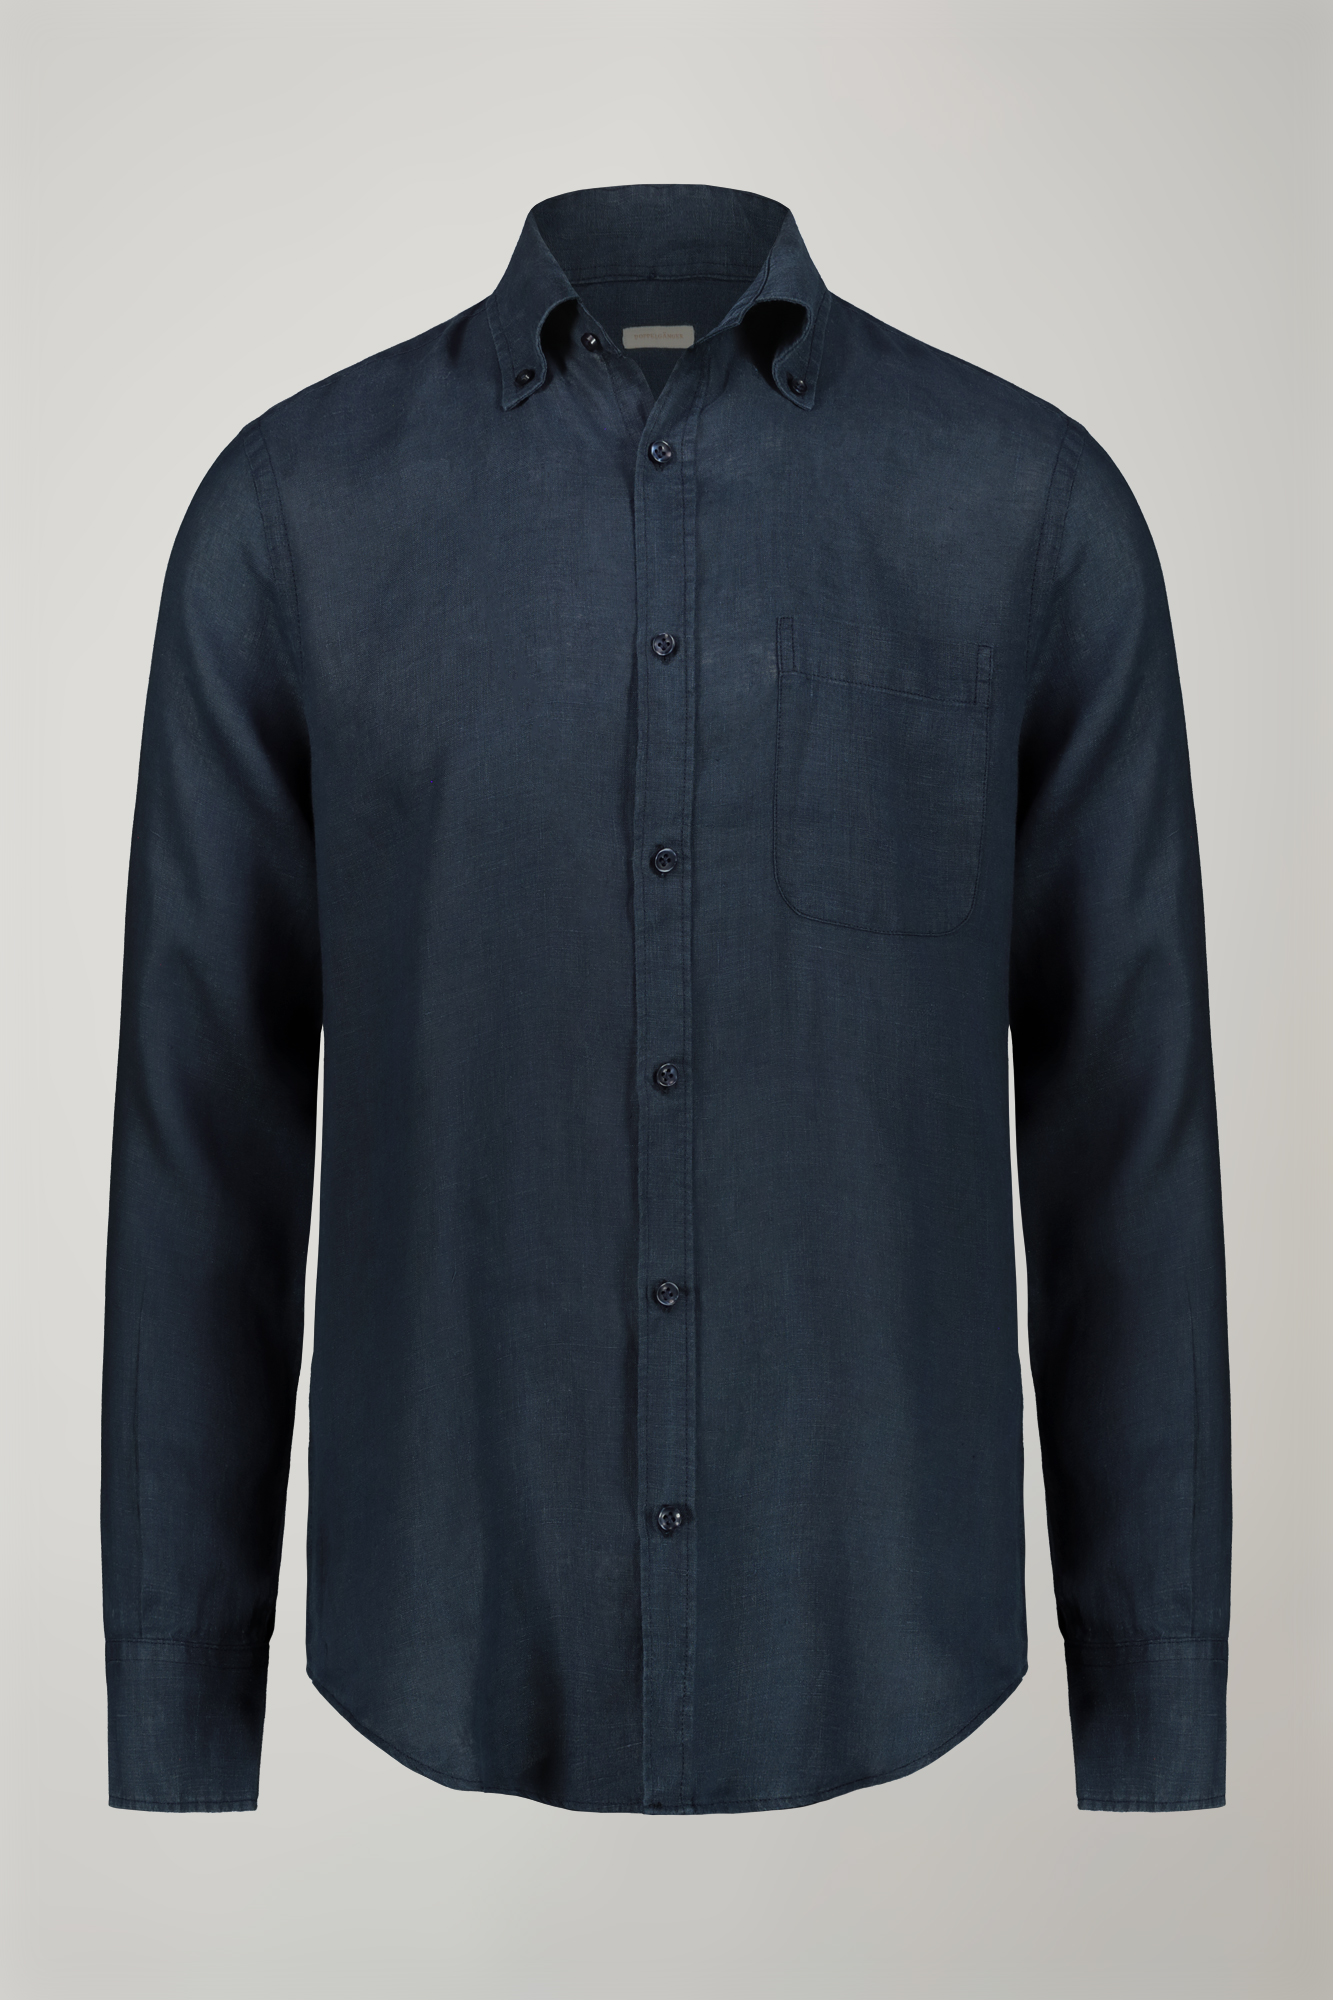 Herrenhemd mit Button-Down-Kragen aus 100 % Leinen in bequemer Passform image number null